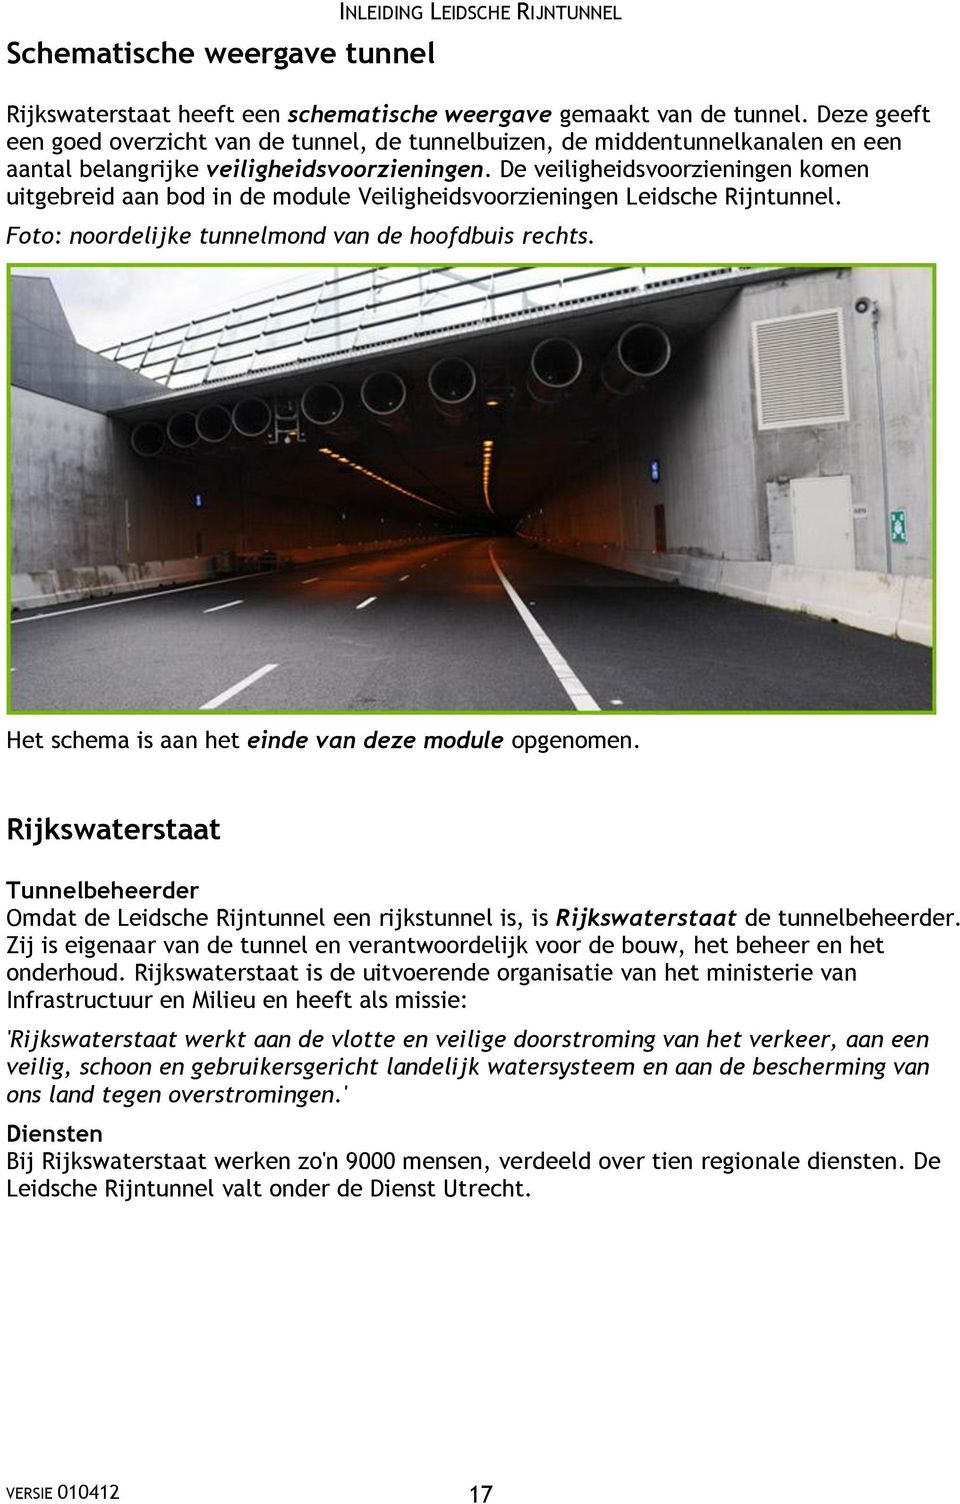 De veiligheidsvoorzieningen komen uitgebreid aan bod in de module Veiligheidsvoorzieningen Leidsche Rijntunnel. Foto: noordelijke tunnelmond van de hoofdbuis rechts.